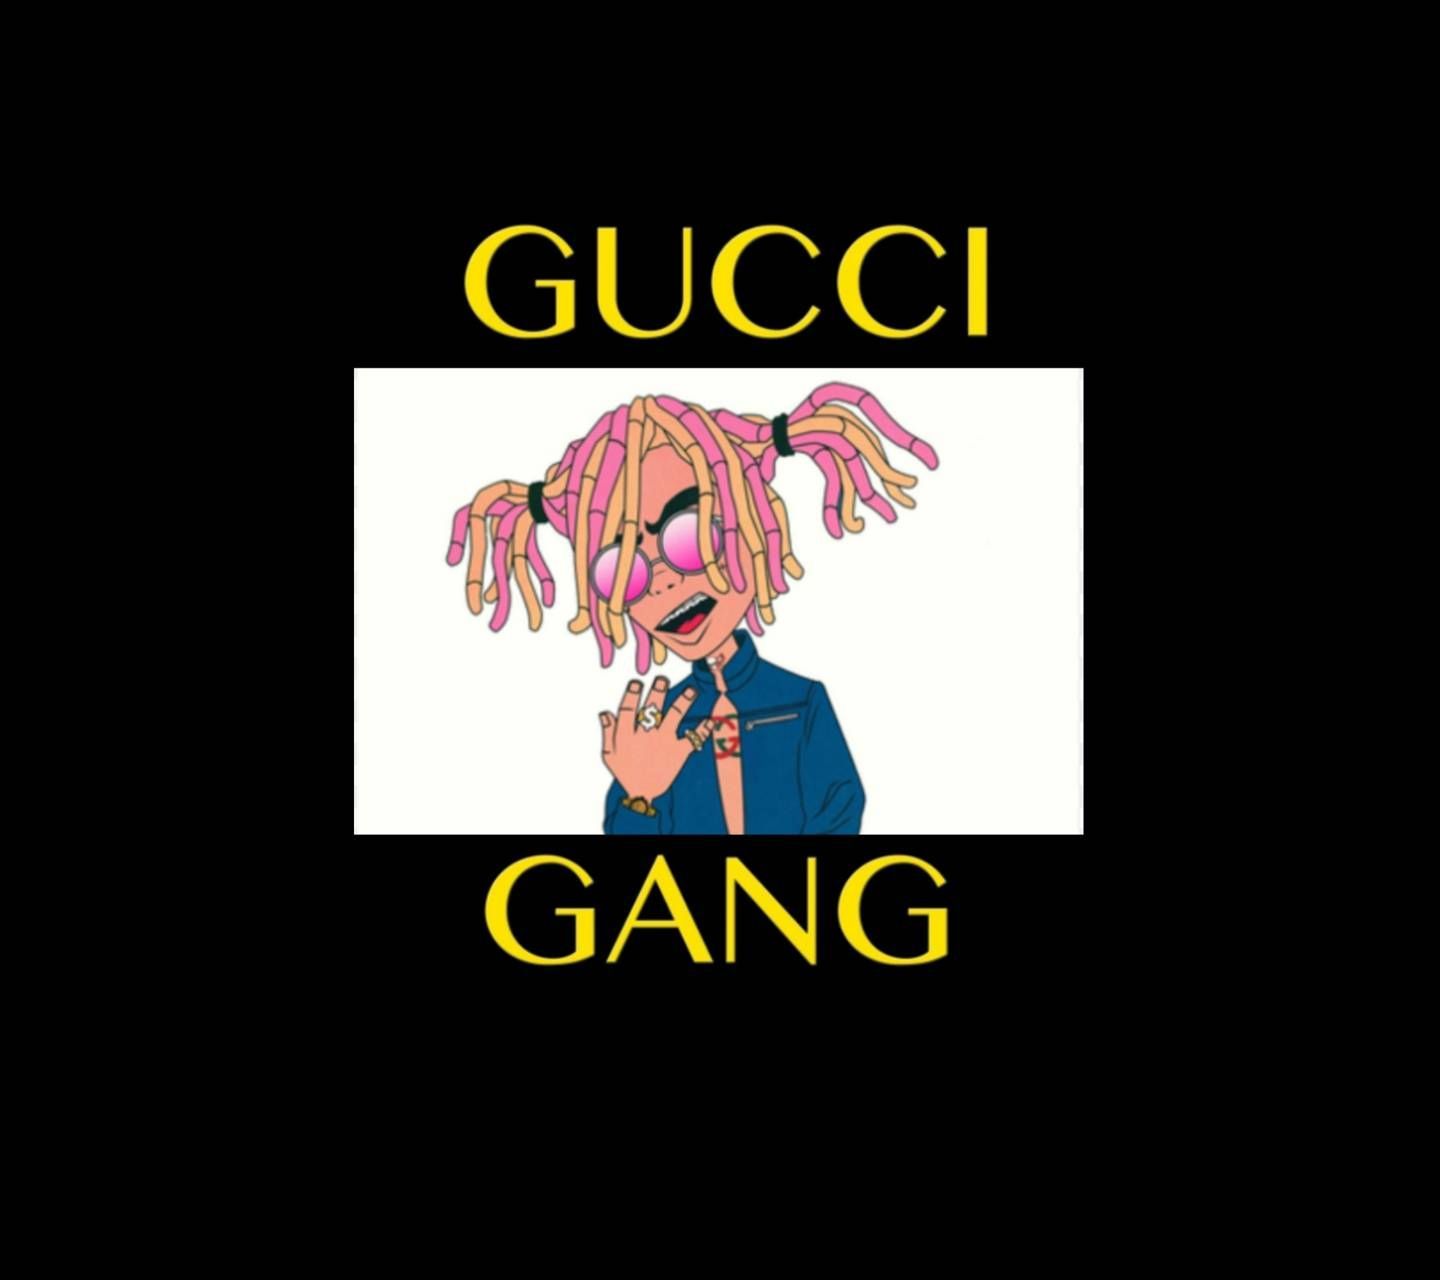 Gucci gang Lilpump wallpaper